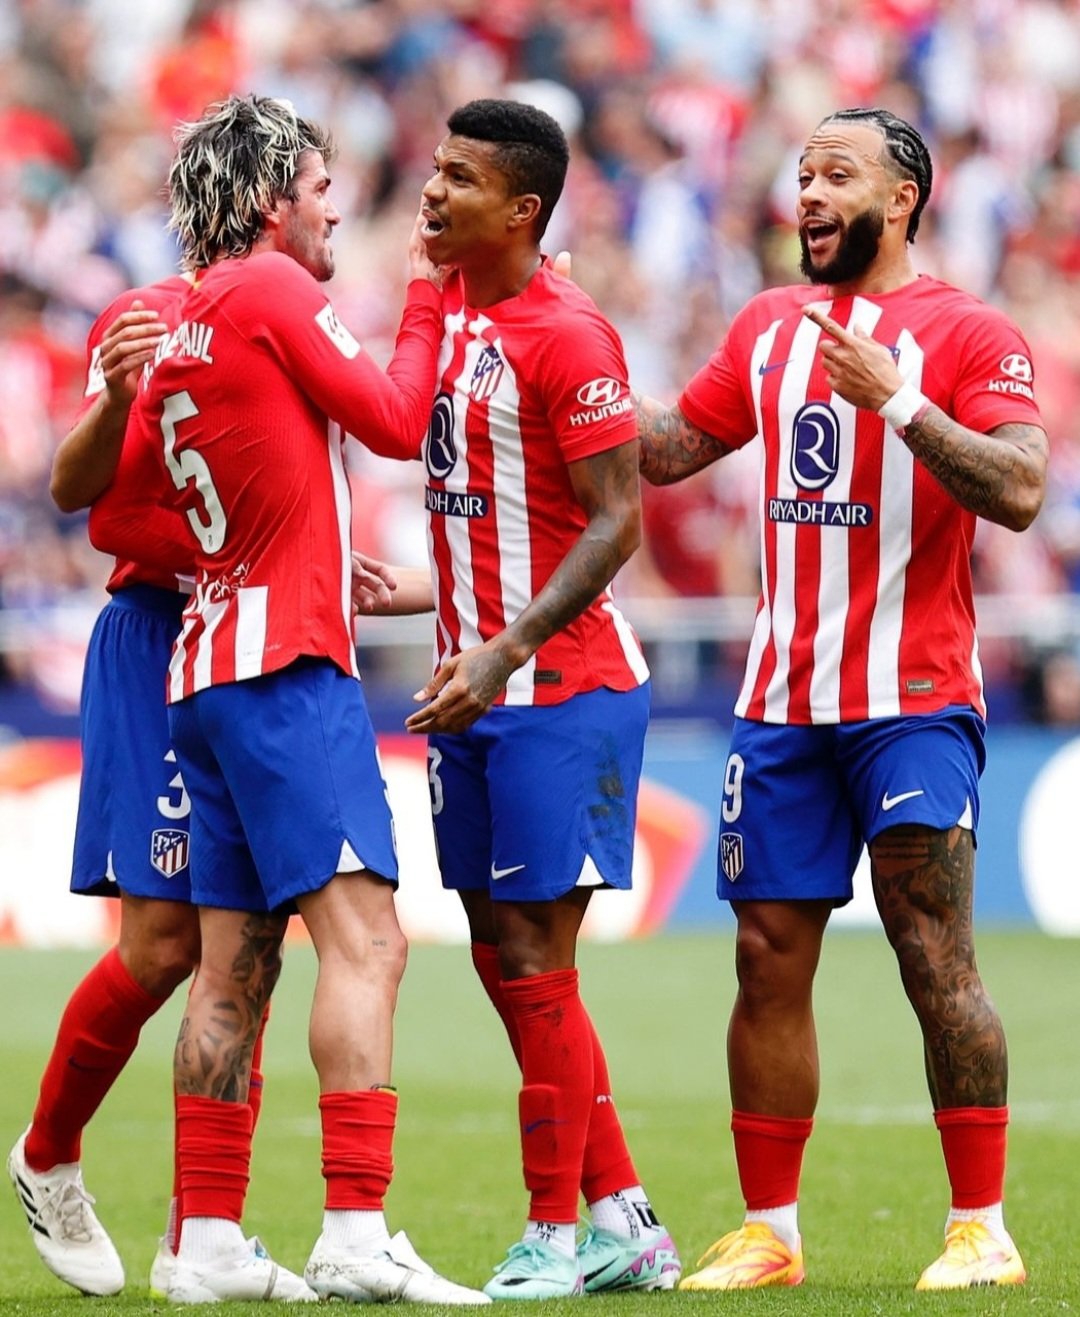 Jugadores del Atlético celebrando el gol. Fuente Atlético de Madrid 